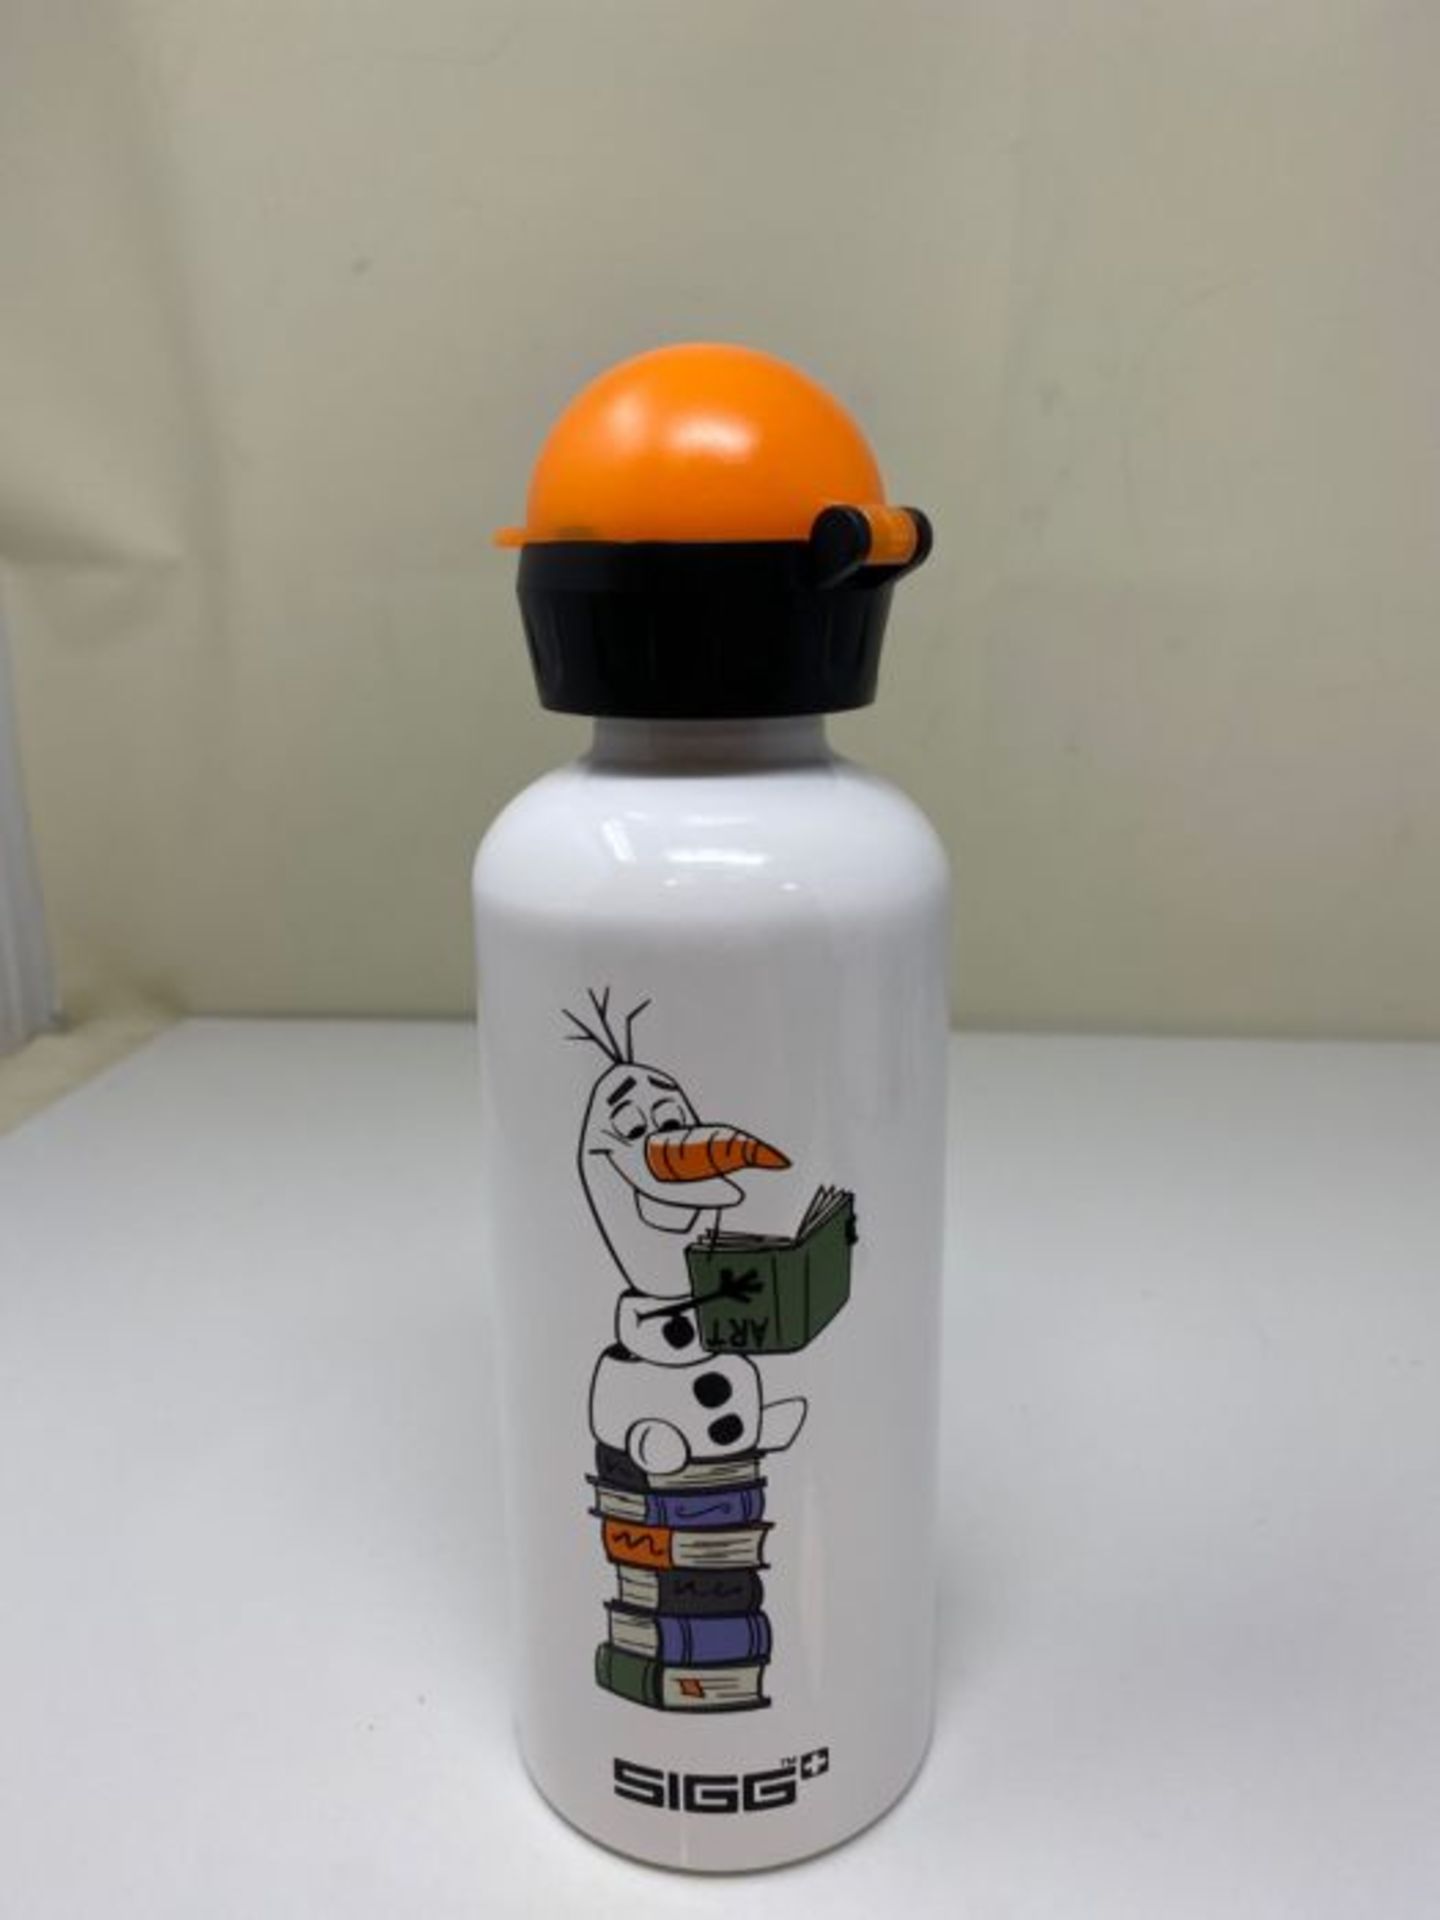 SIGG Olaf II Kinder Trinkflasche (0.6 L), schadstofffreie Kinderflasche mit auslaufsic - Image 2 of 2